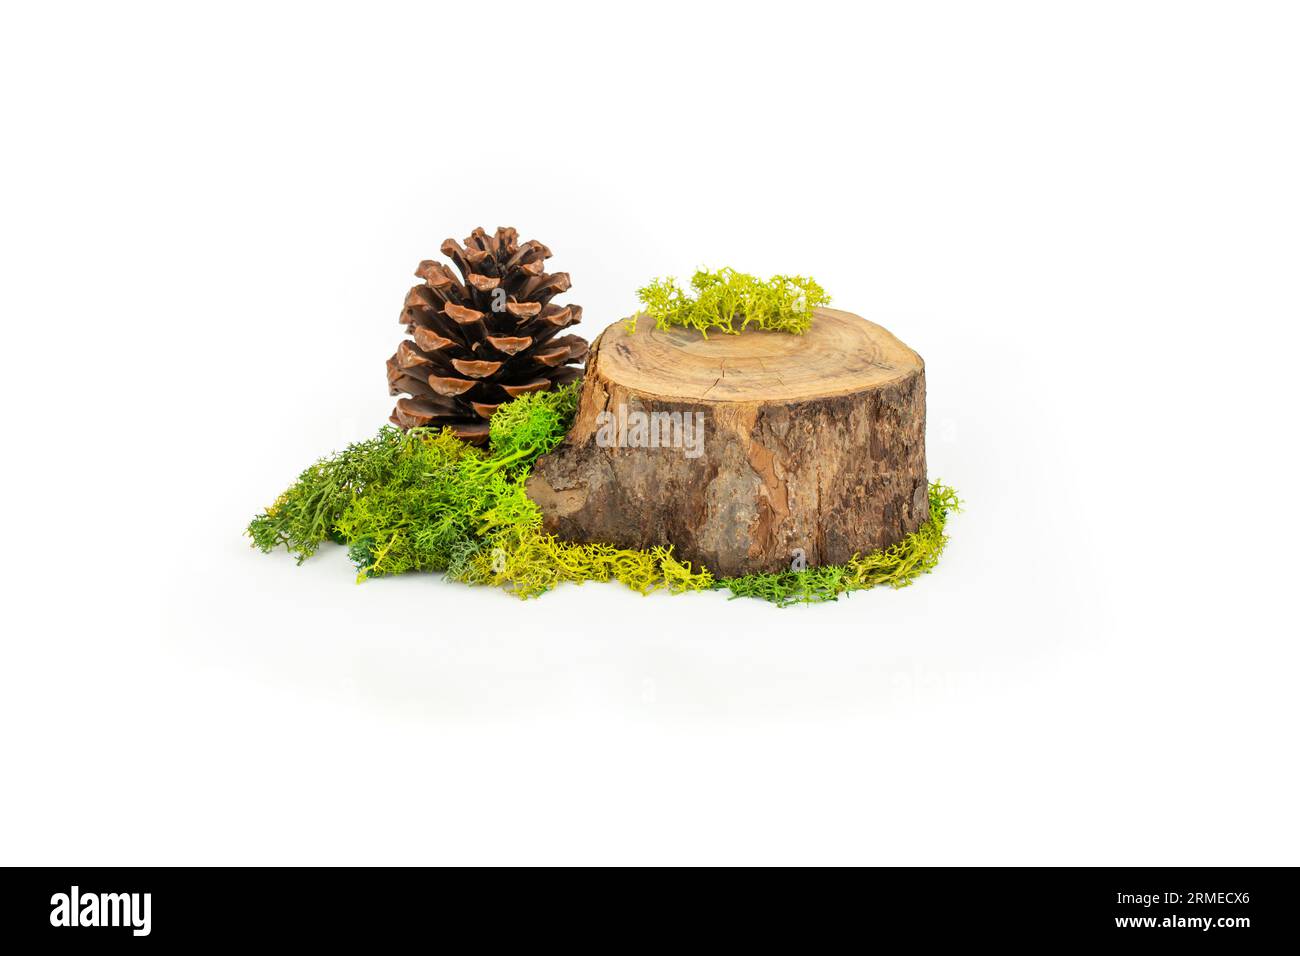 Sezione trasversale del tronco d'albero con lichene stabilizzato e cono di pino, impostazione per la visualizzazione naturale del prodotto, isolata su sfondo bianco Foto Stock